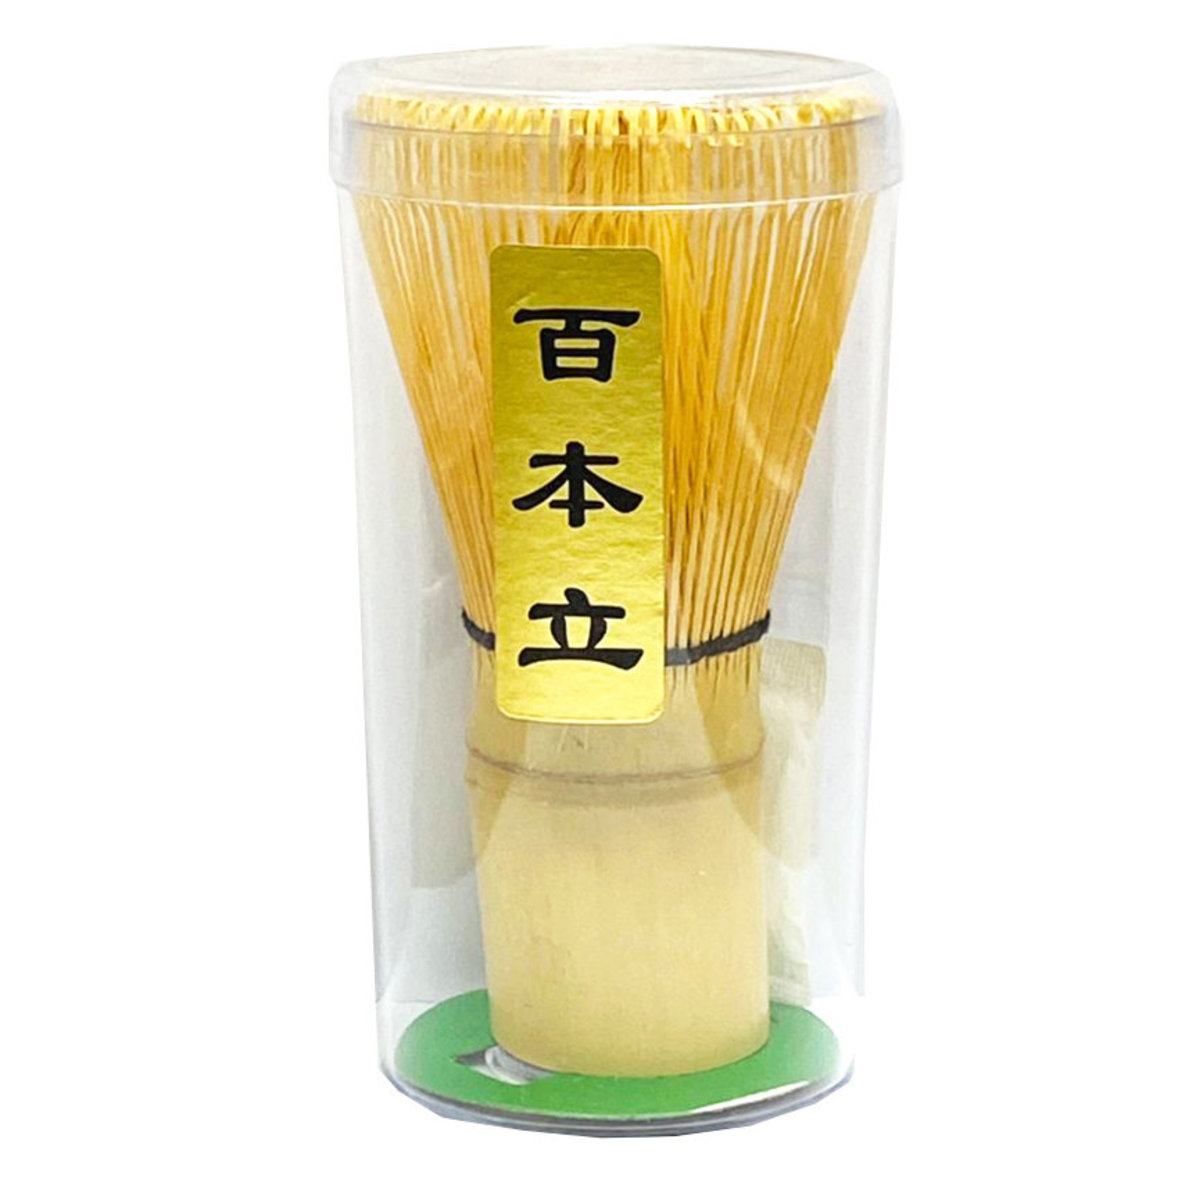 Brand New Japanese "Chasen" Bamboo Wisk Tea Ceremony Utensil/ 80 Count 